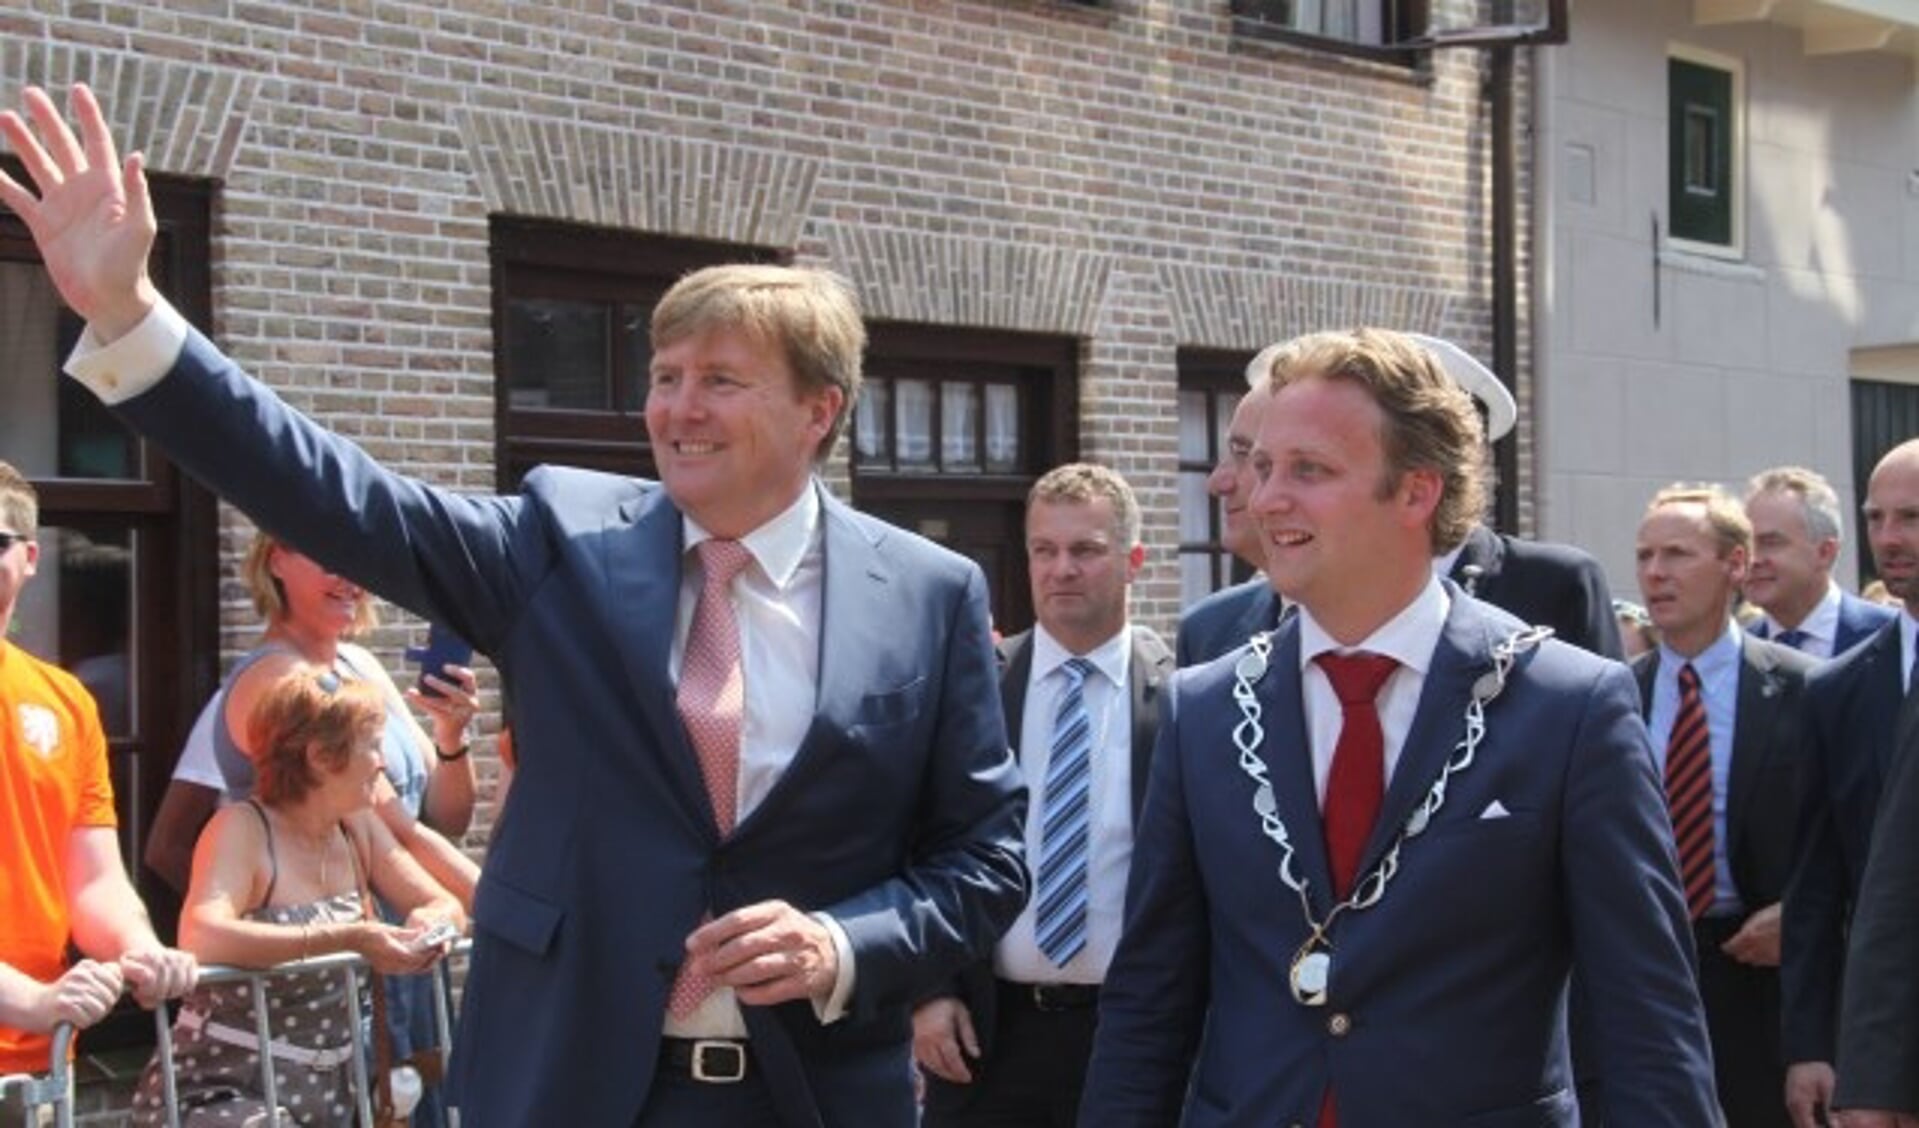 Het hoogtepunt van de ambtsperiode in Oudewater was ongetwijfeld het bezoek van Koning Willem Alexander. (Archieffoto: Alex de Kuijper)